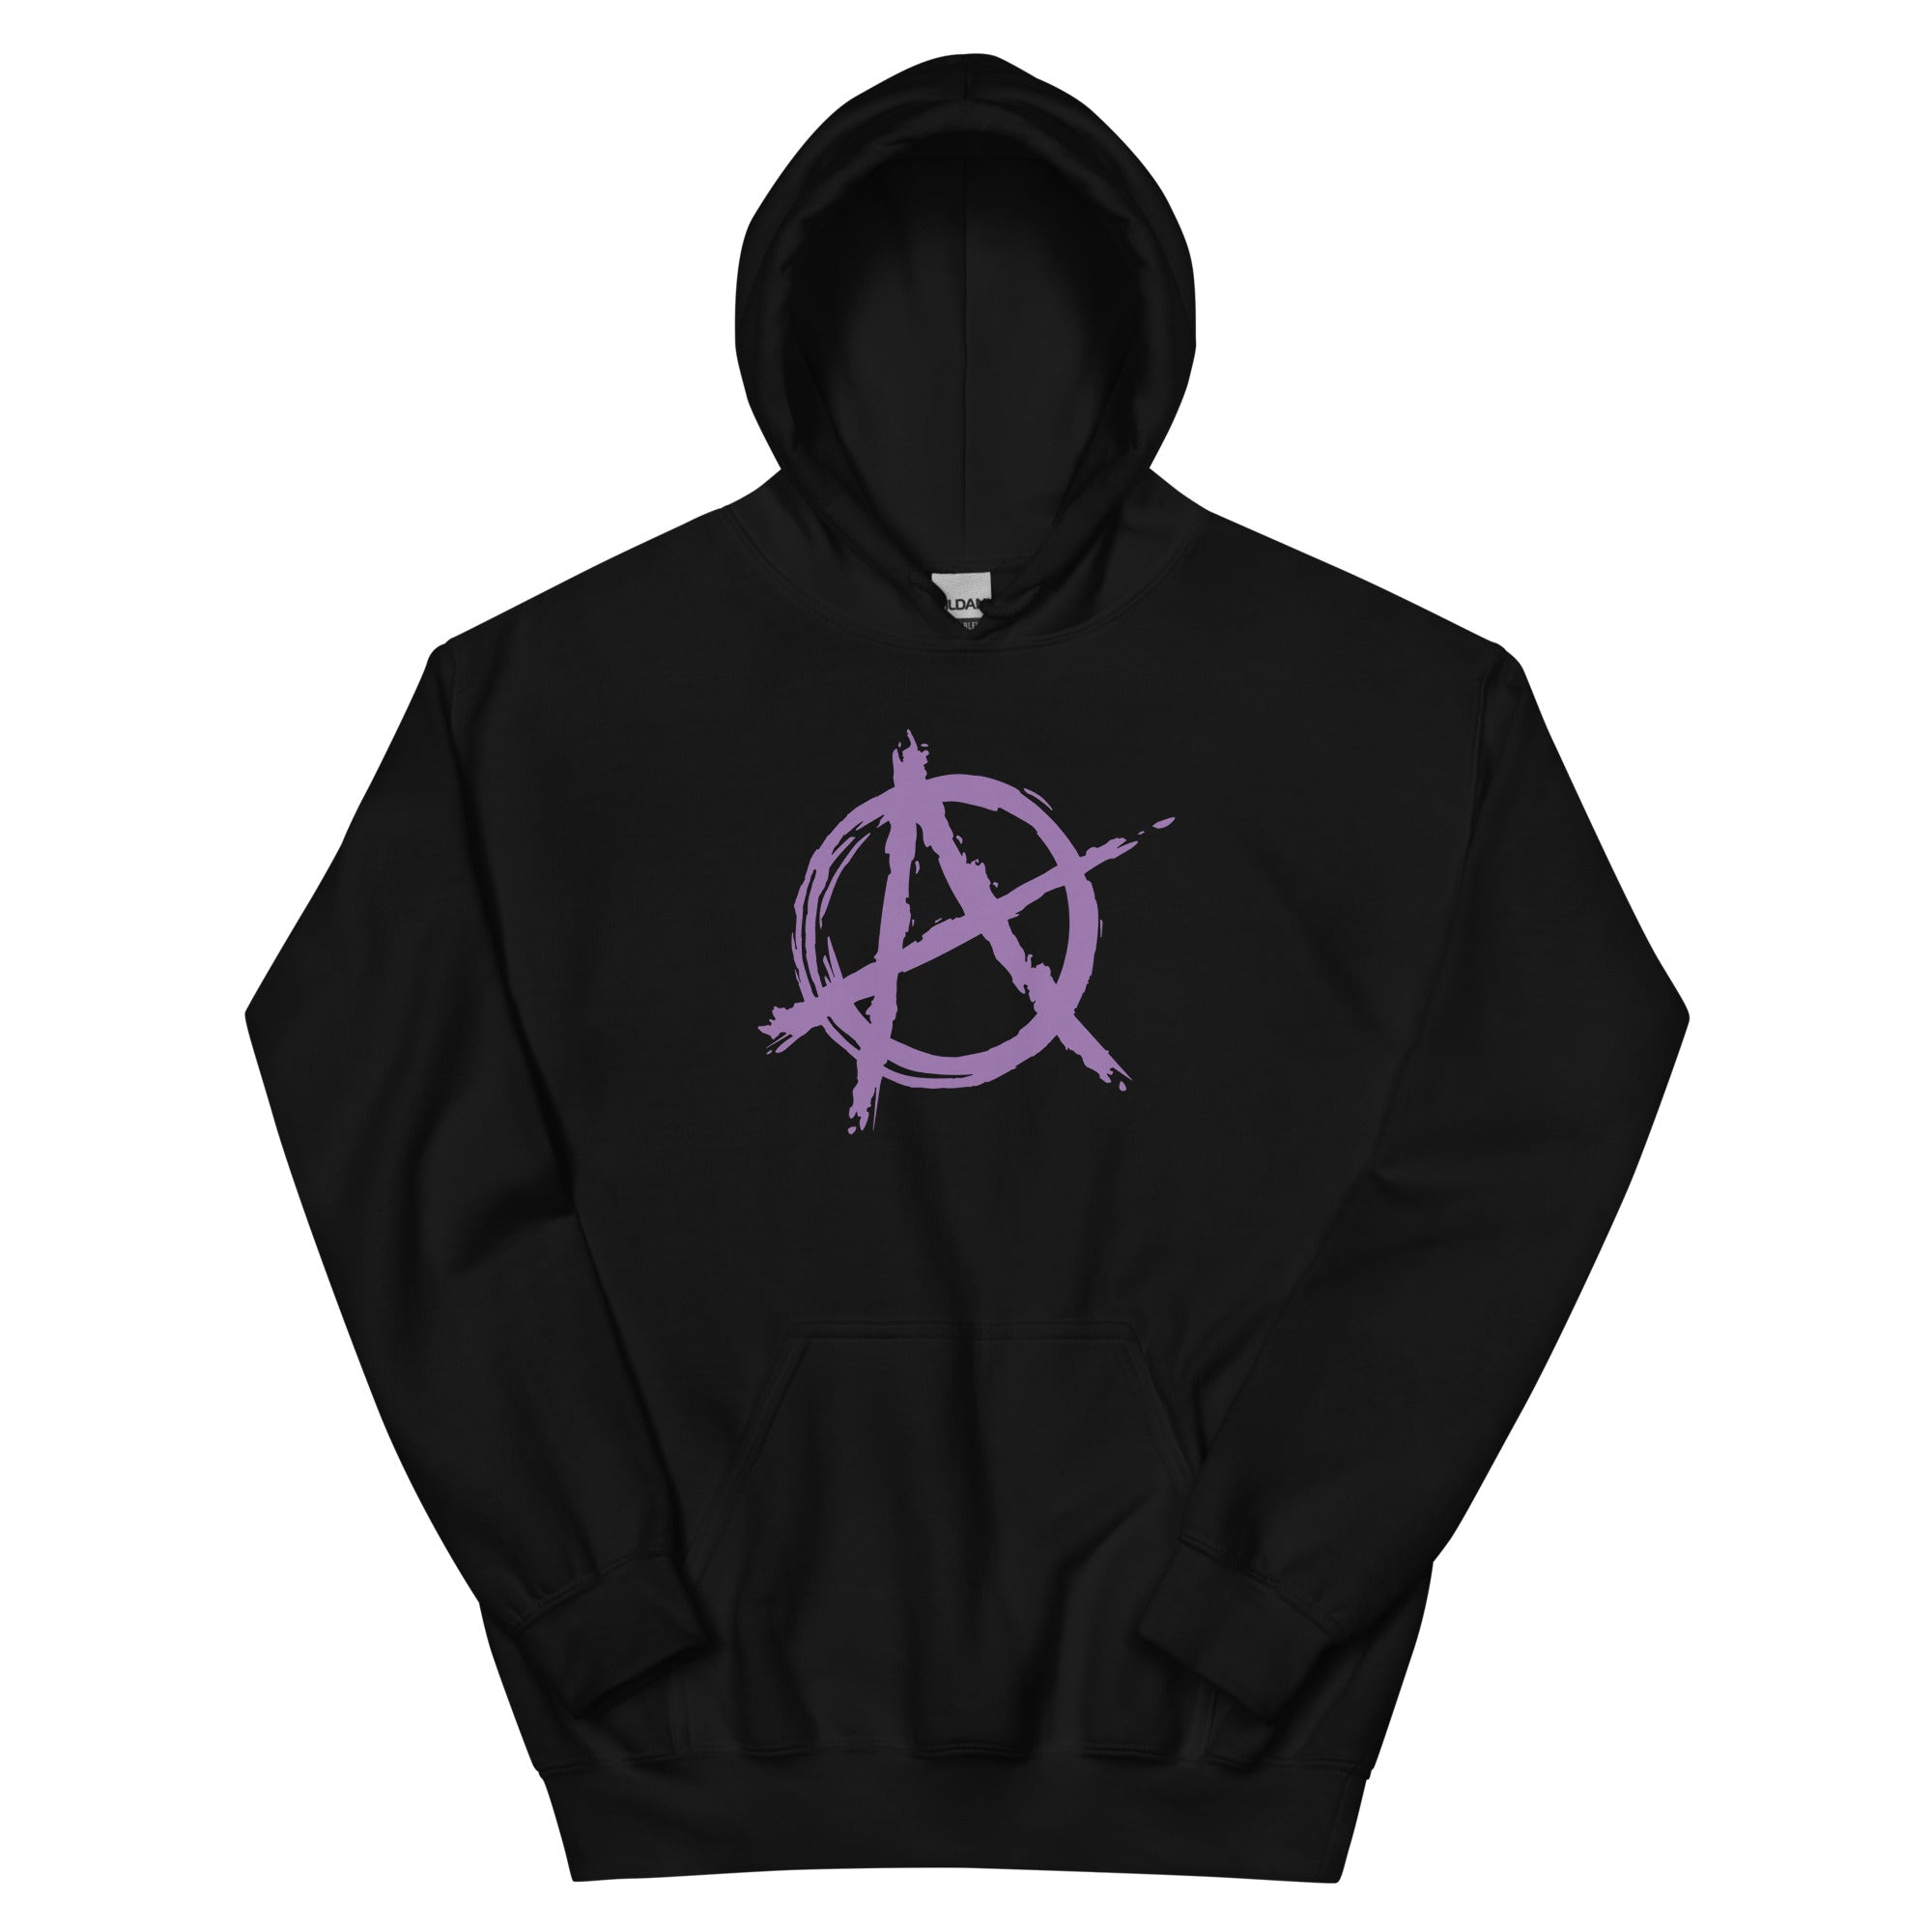 Purple Anarchy is Order Symbol Punk Rock Unisex Hoodie Sweatshirt - Edge of Life Designs